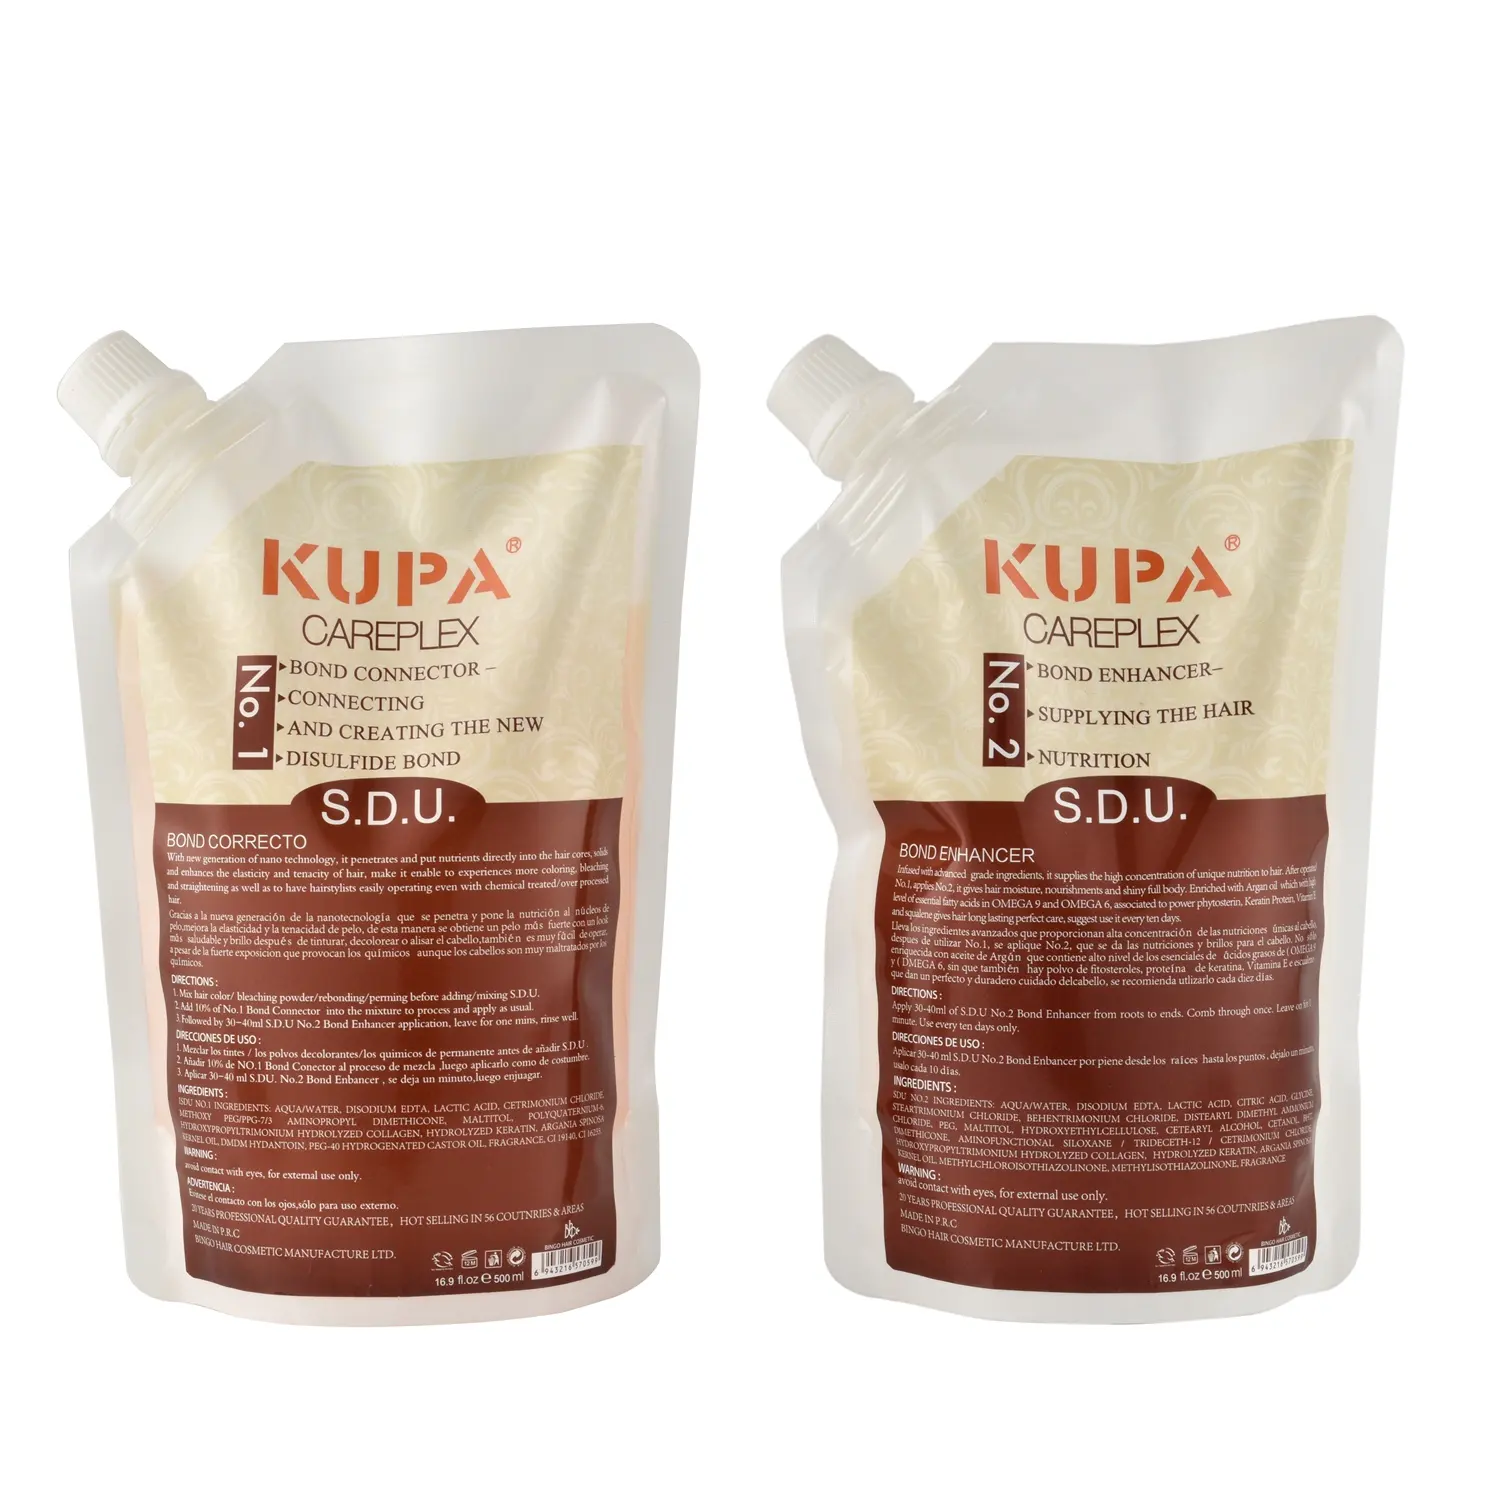 GMPC Kupa Salon usa SDU Careplex migliora l'elasticità dei capelli nutriente permanente facile da colorare per capelli trattati